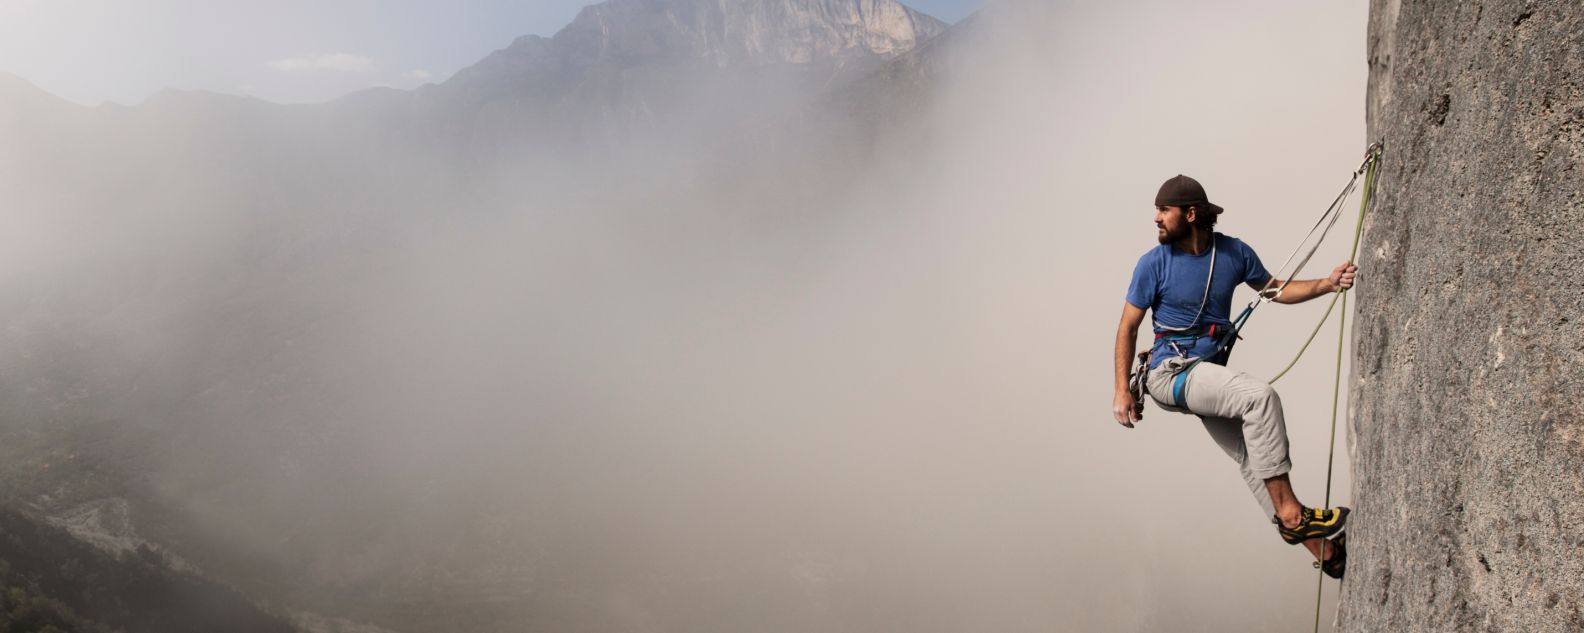 Un alpiniste escalade une paroi rocheuse dans les nuages